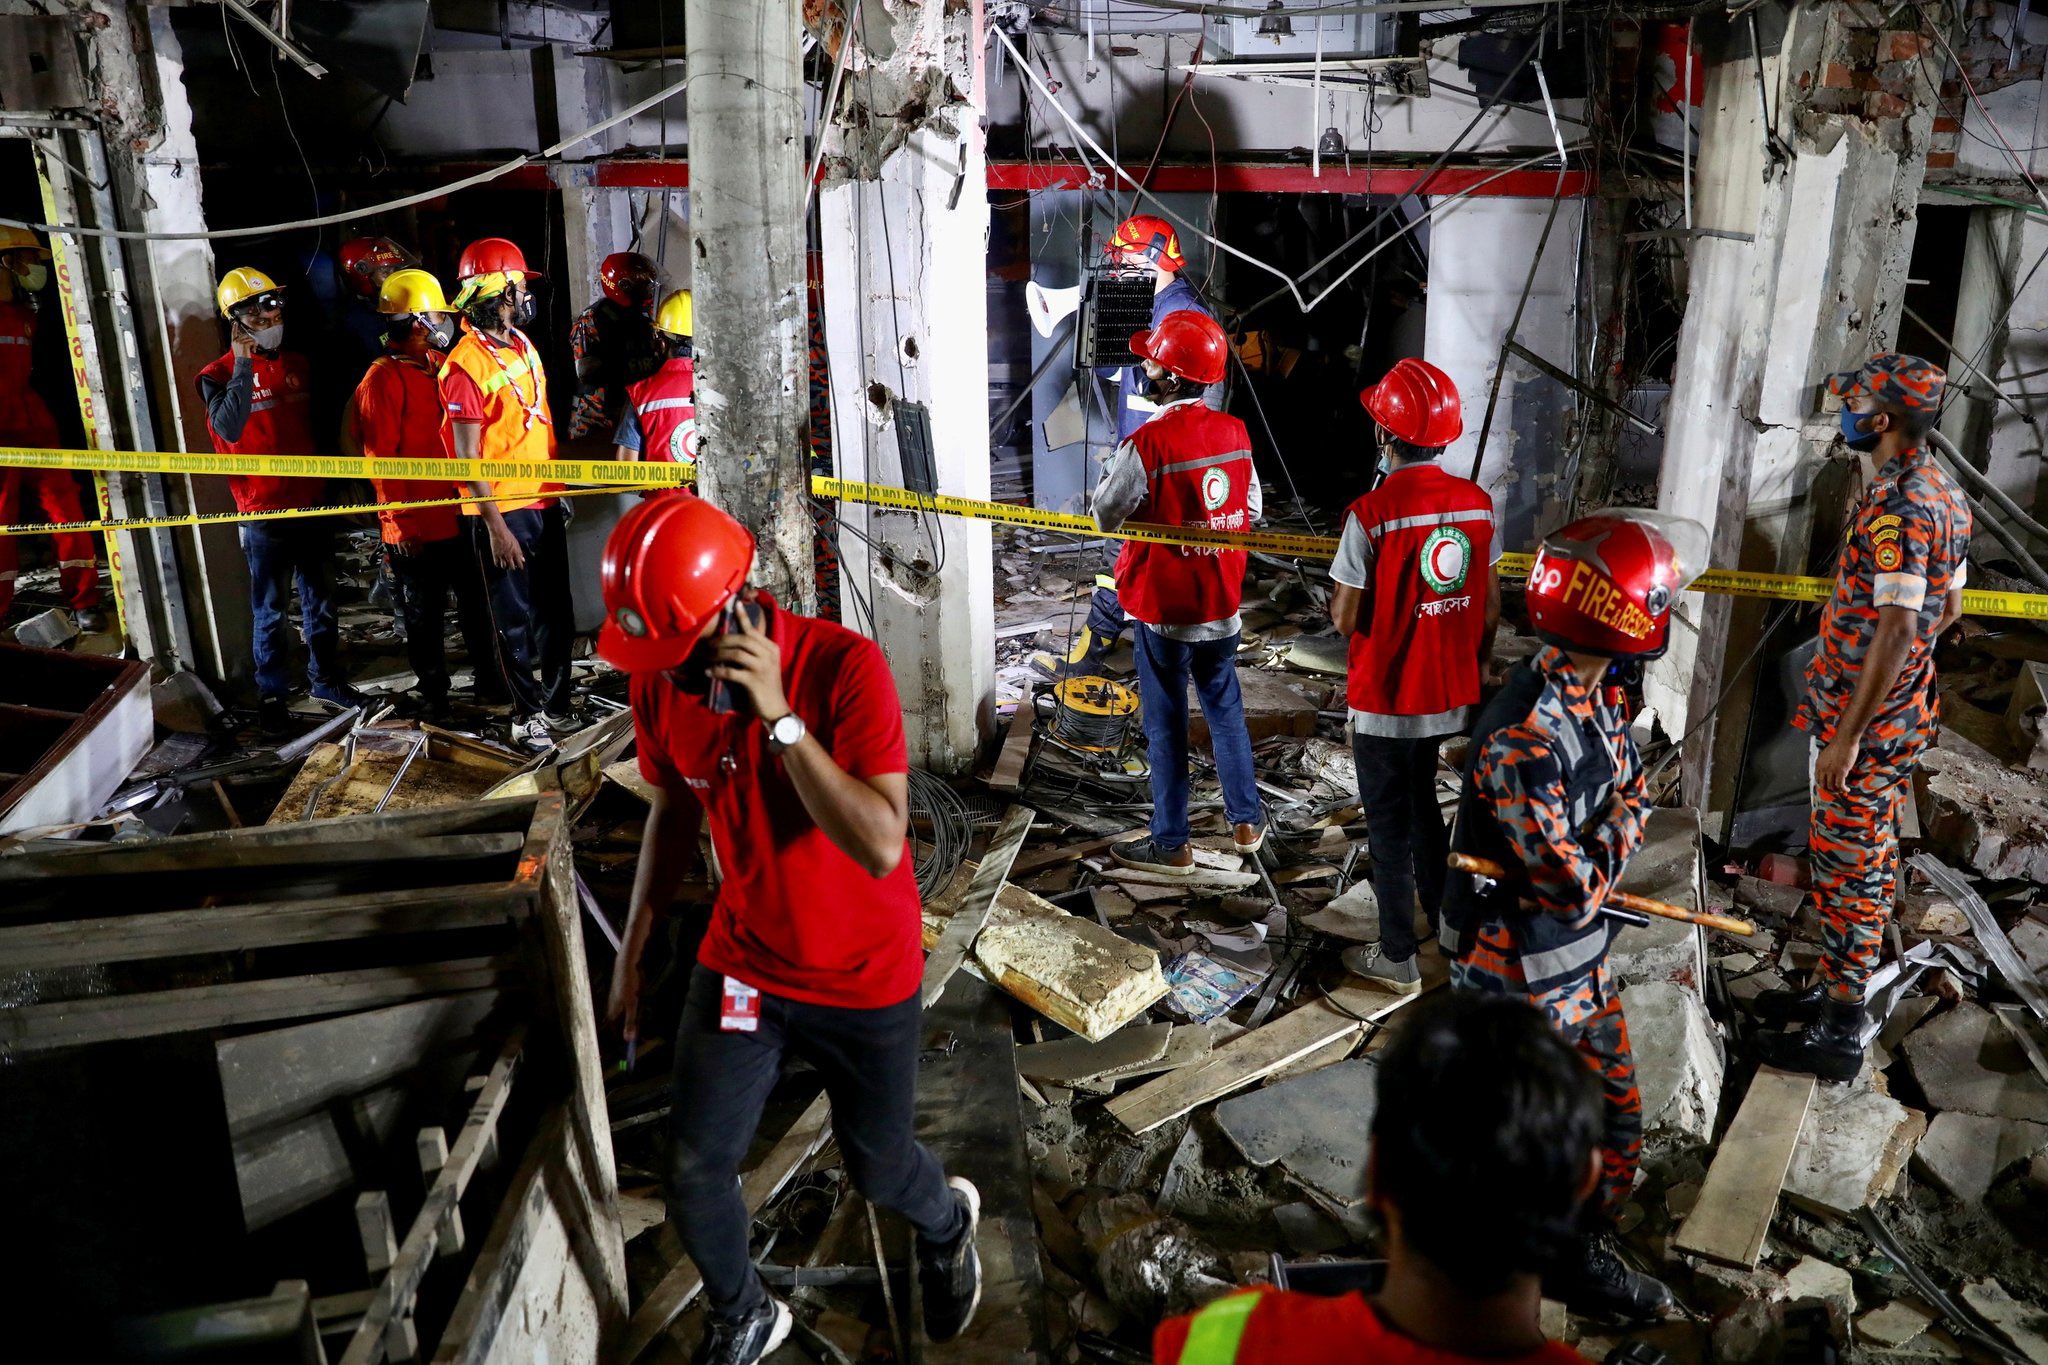 बांग्लादेश में राजधानी ढाका के मोघबाजार क्षेत्र में विस्फोट से 7 लोगों के मारे जाने और 50 अन्य के घायल